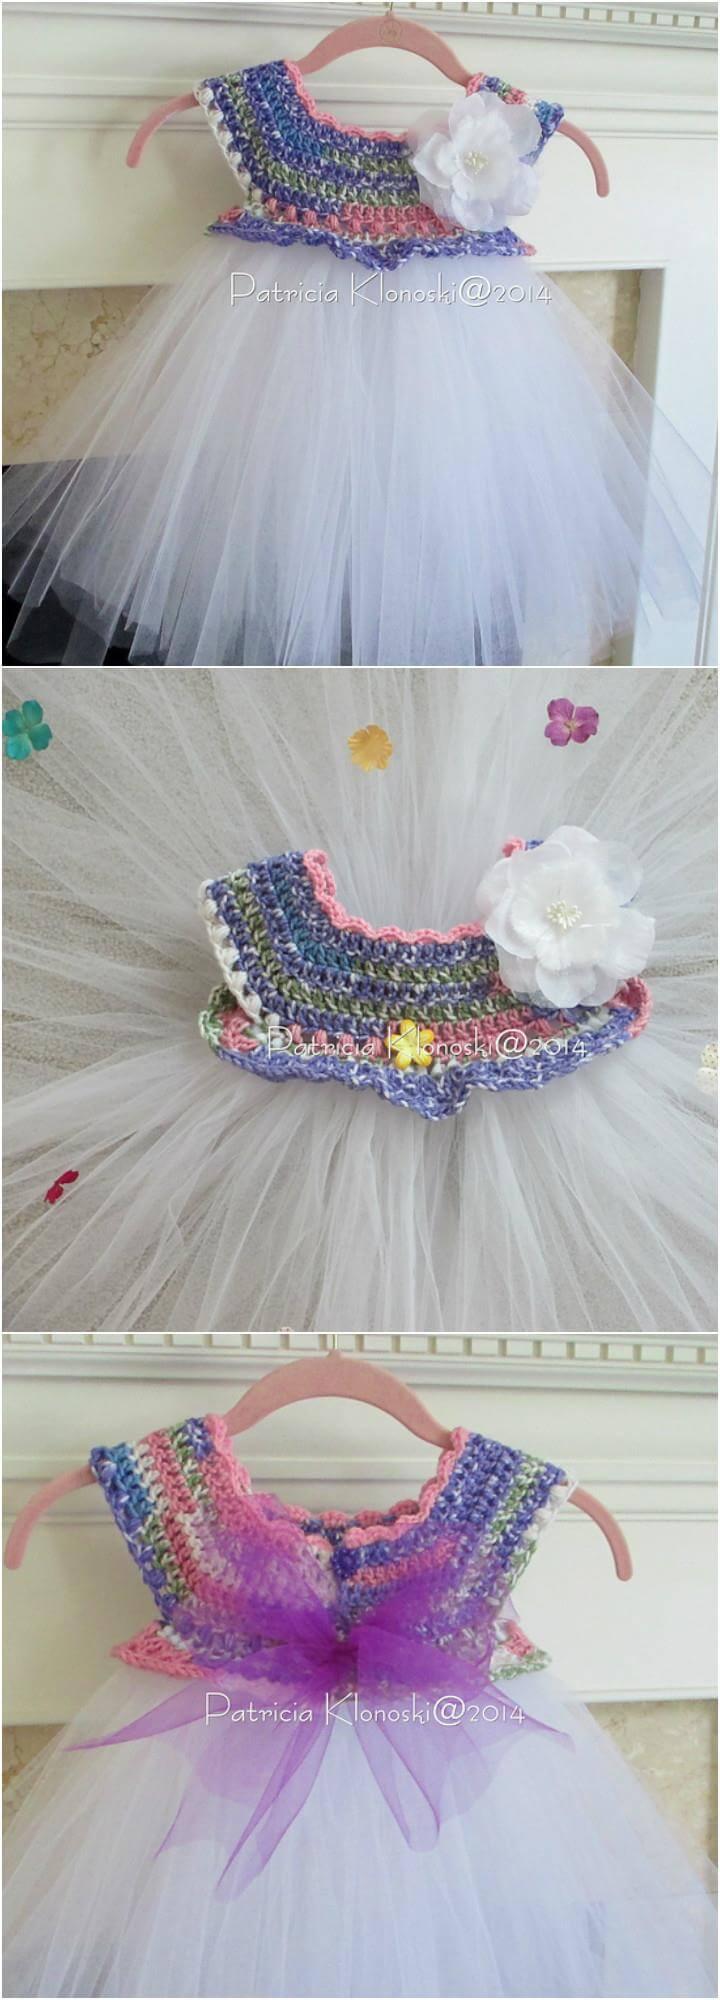 crochet empire waist tutu dress